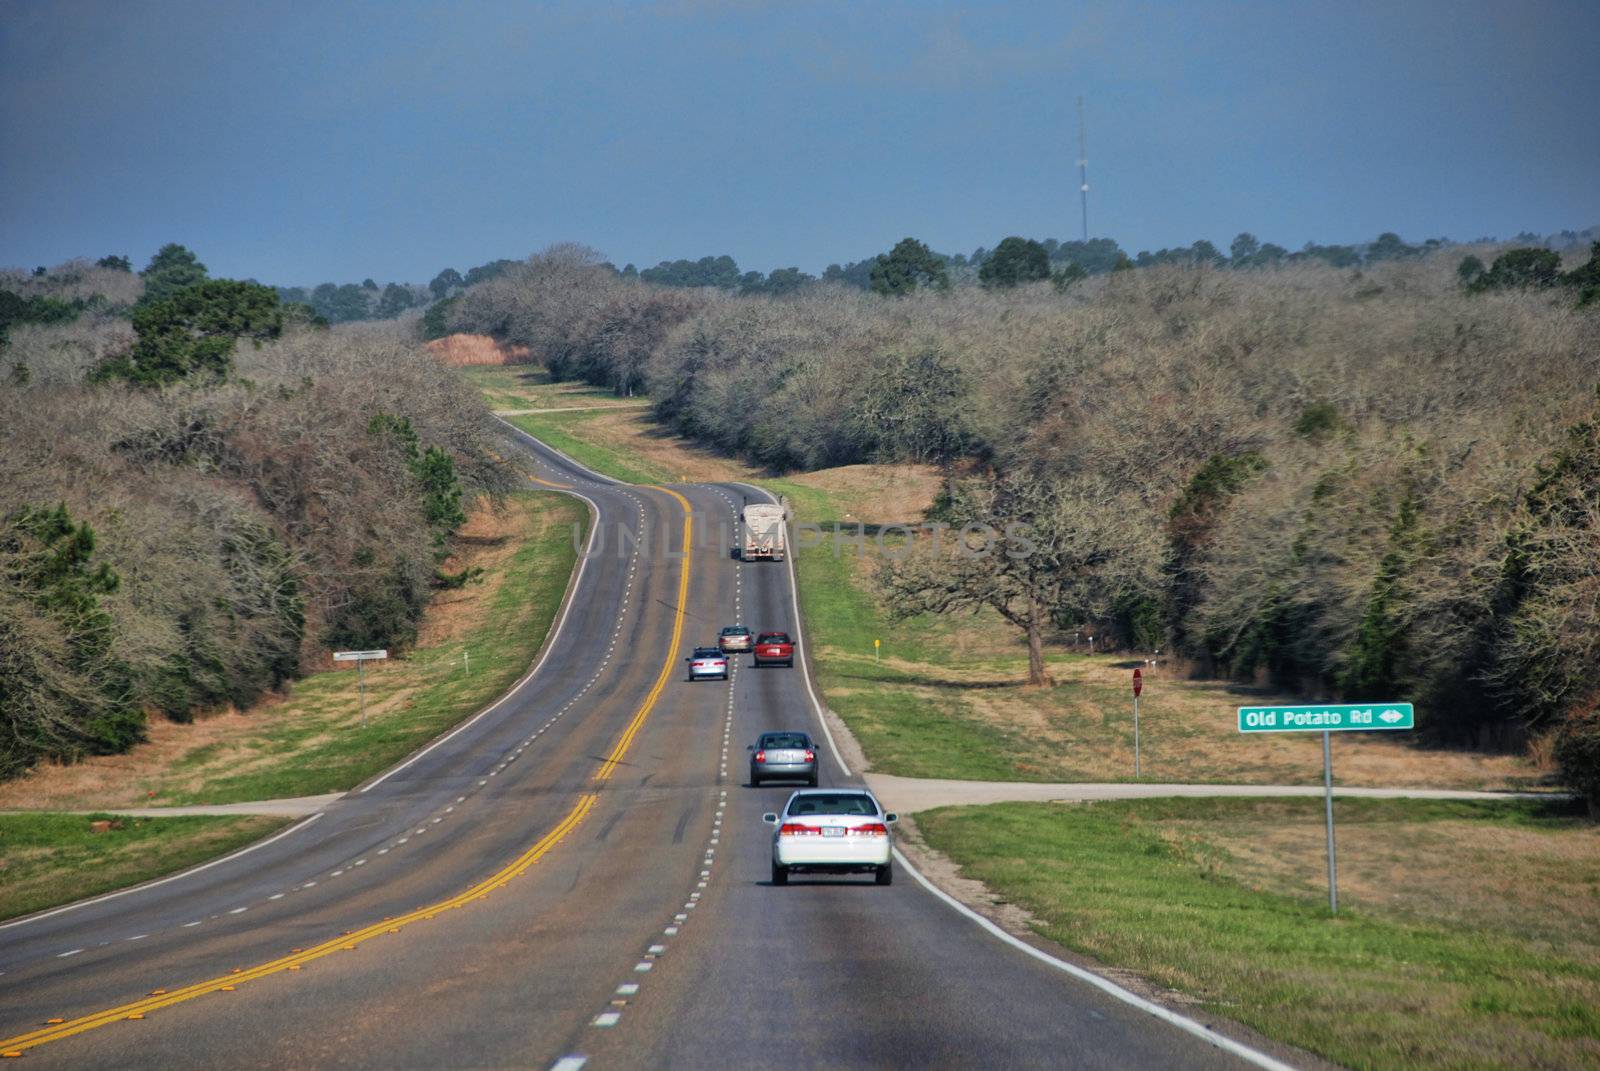 Texas Road, 2008 by jovannig